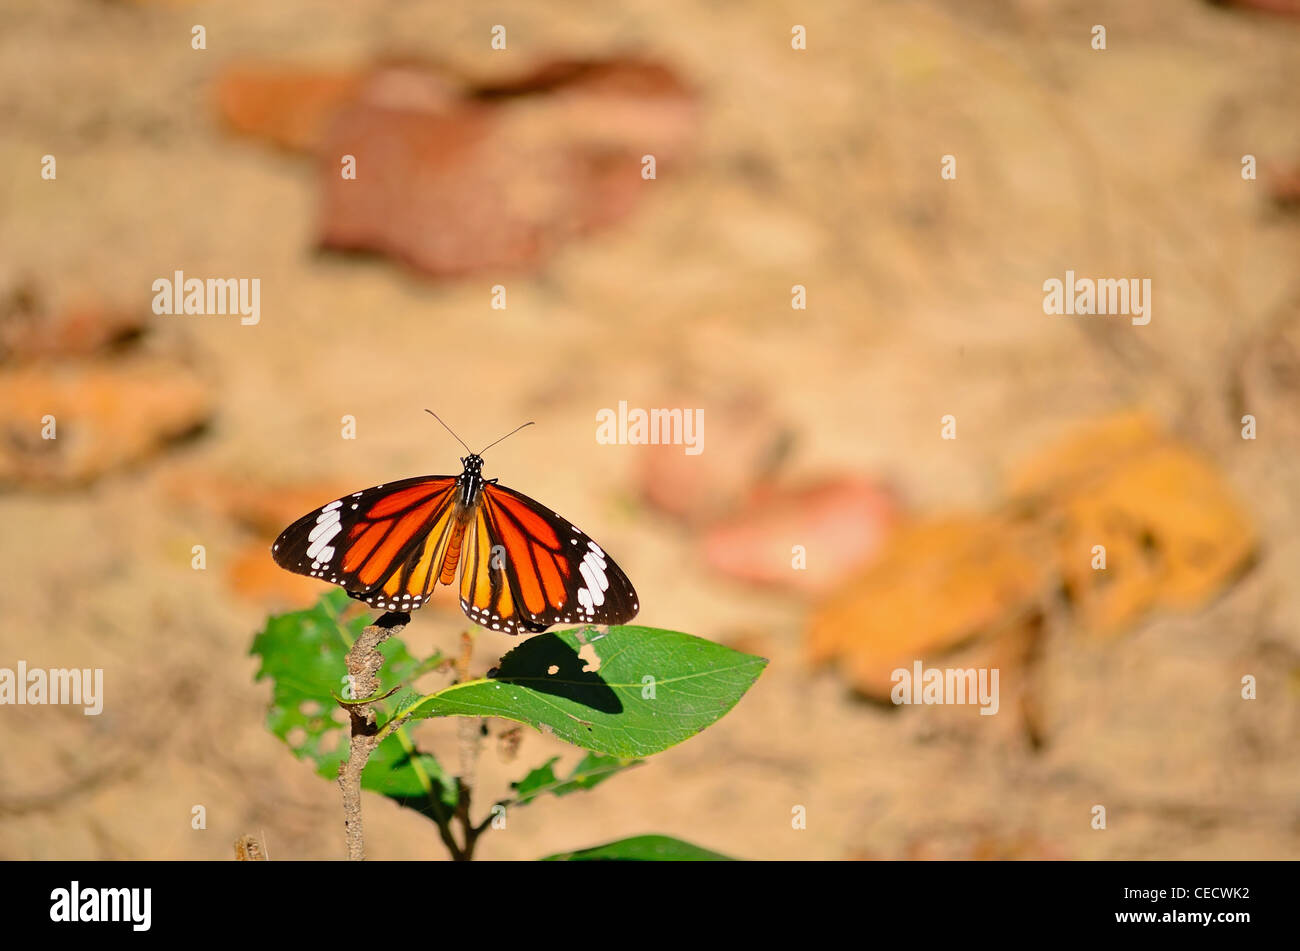 Danaus genutia/The Striped Tiger (Common Tiger) butterfly Stock Photo